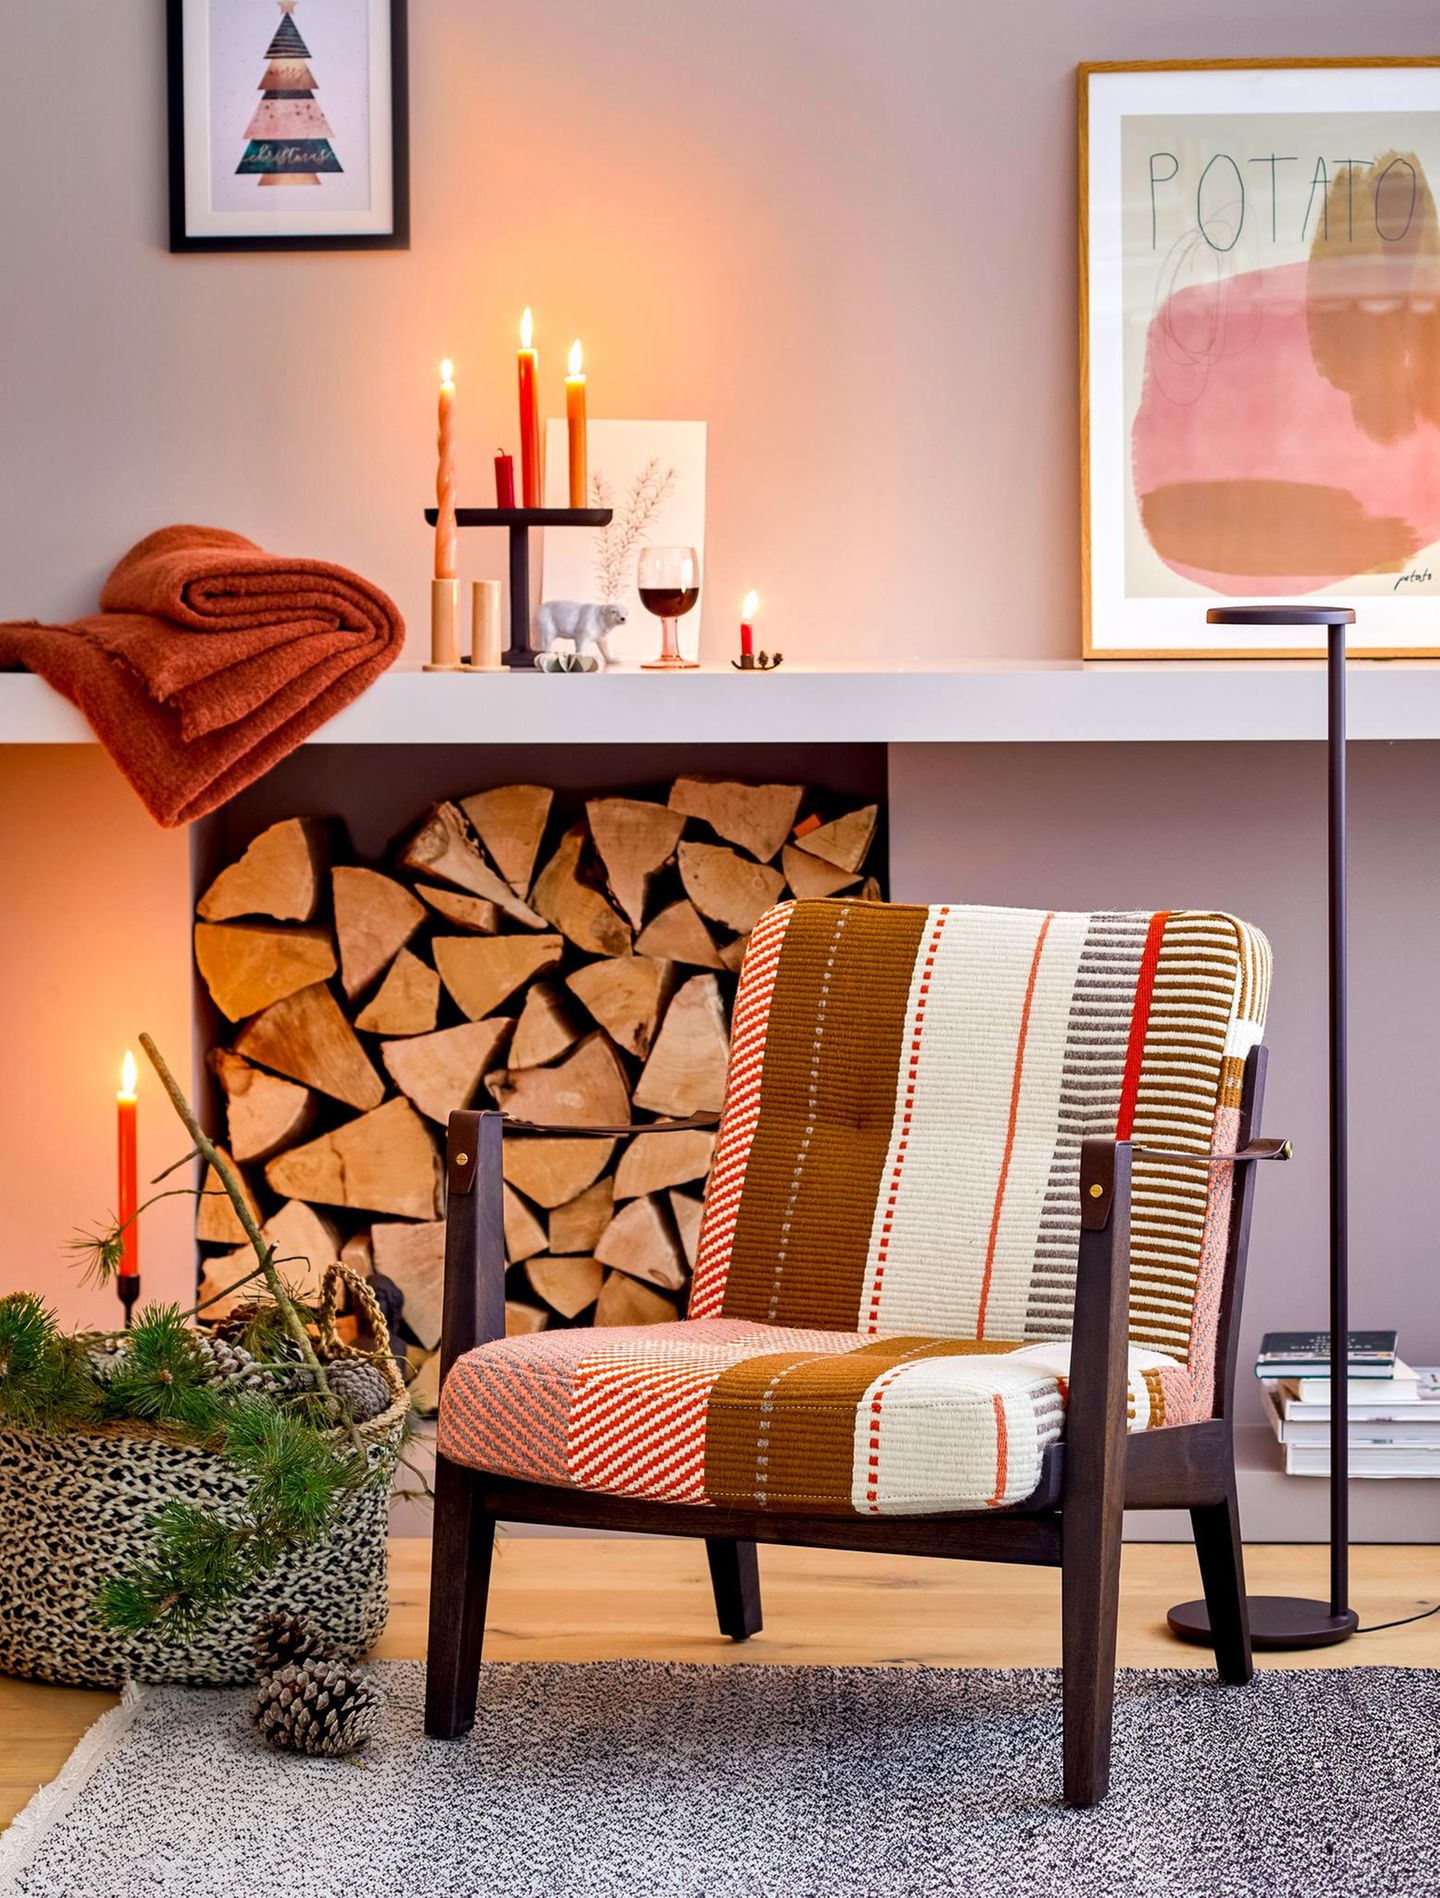 Gestreifter Sessel n gedeckten Farben steht in einem hellen Raum mit Kerzendeko und Korb voller Zapfen und Zweige